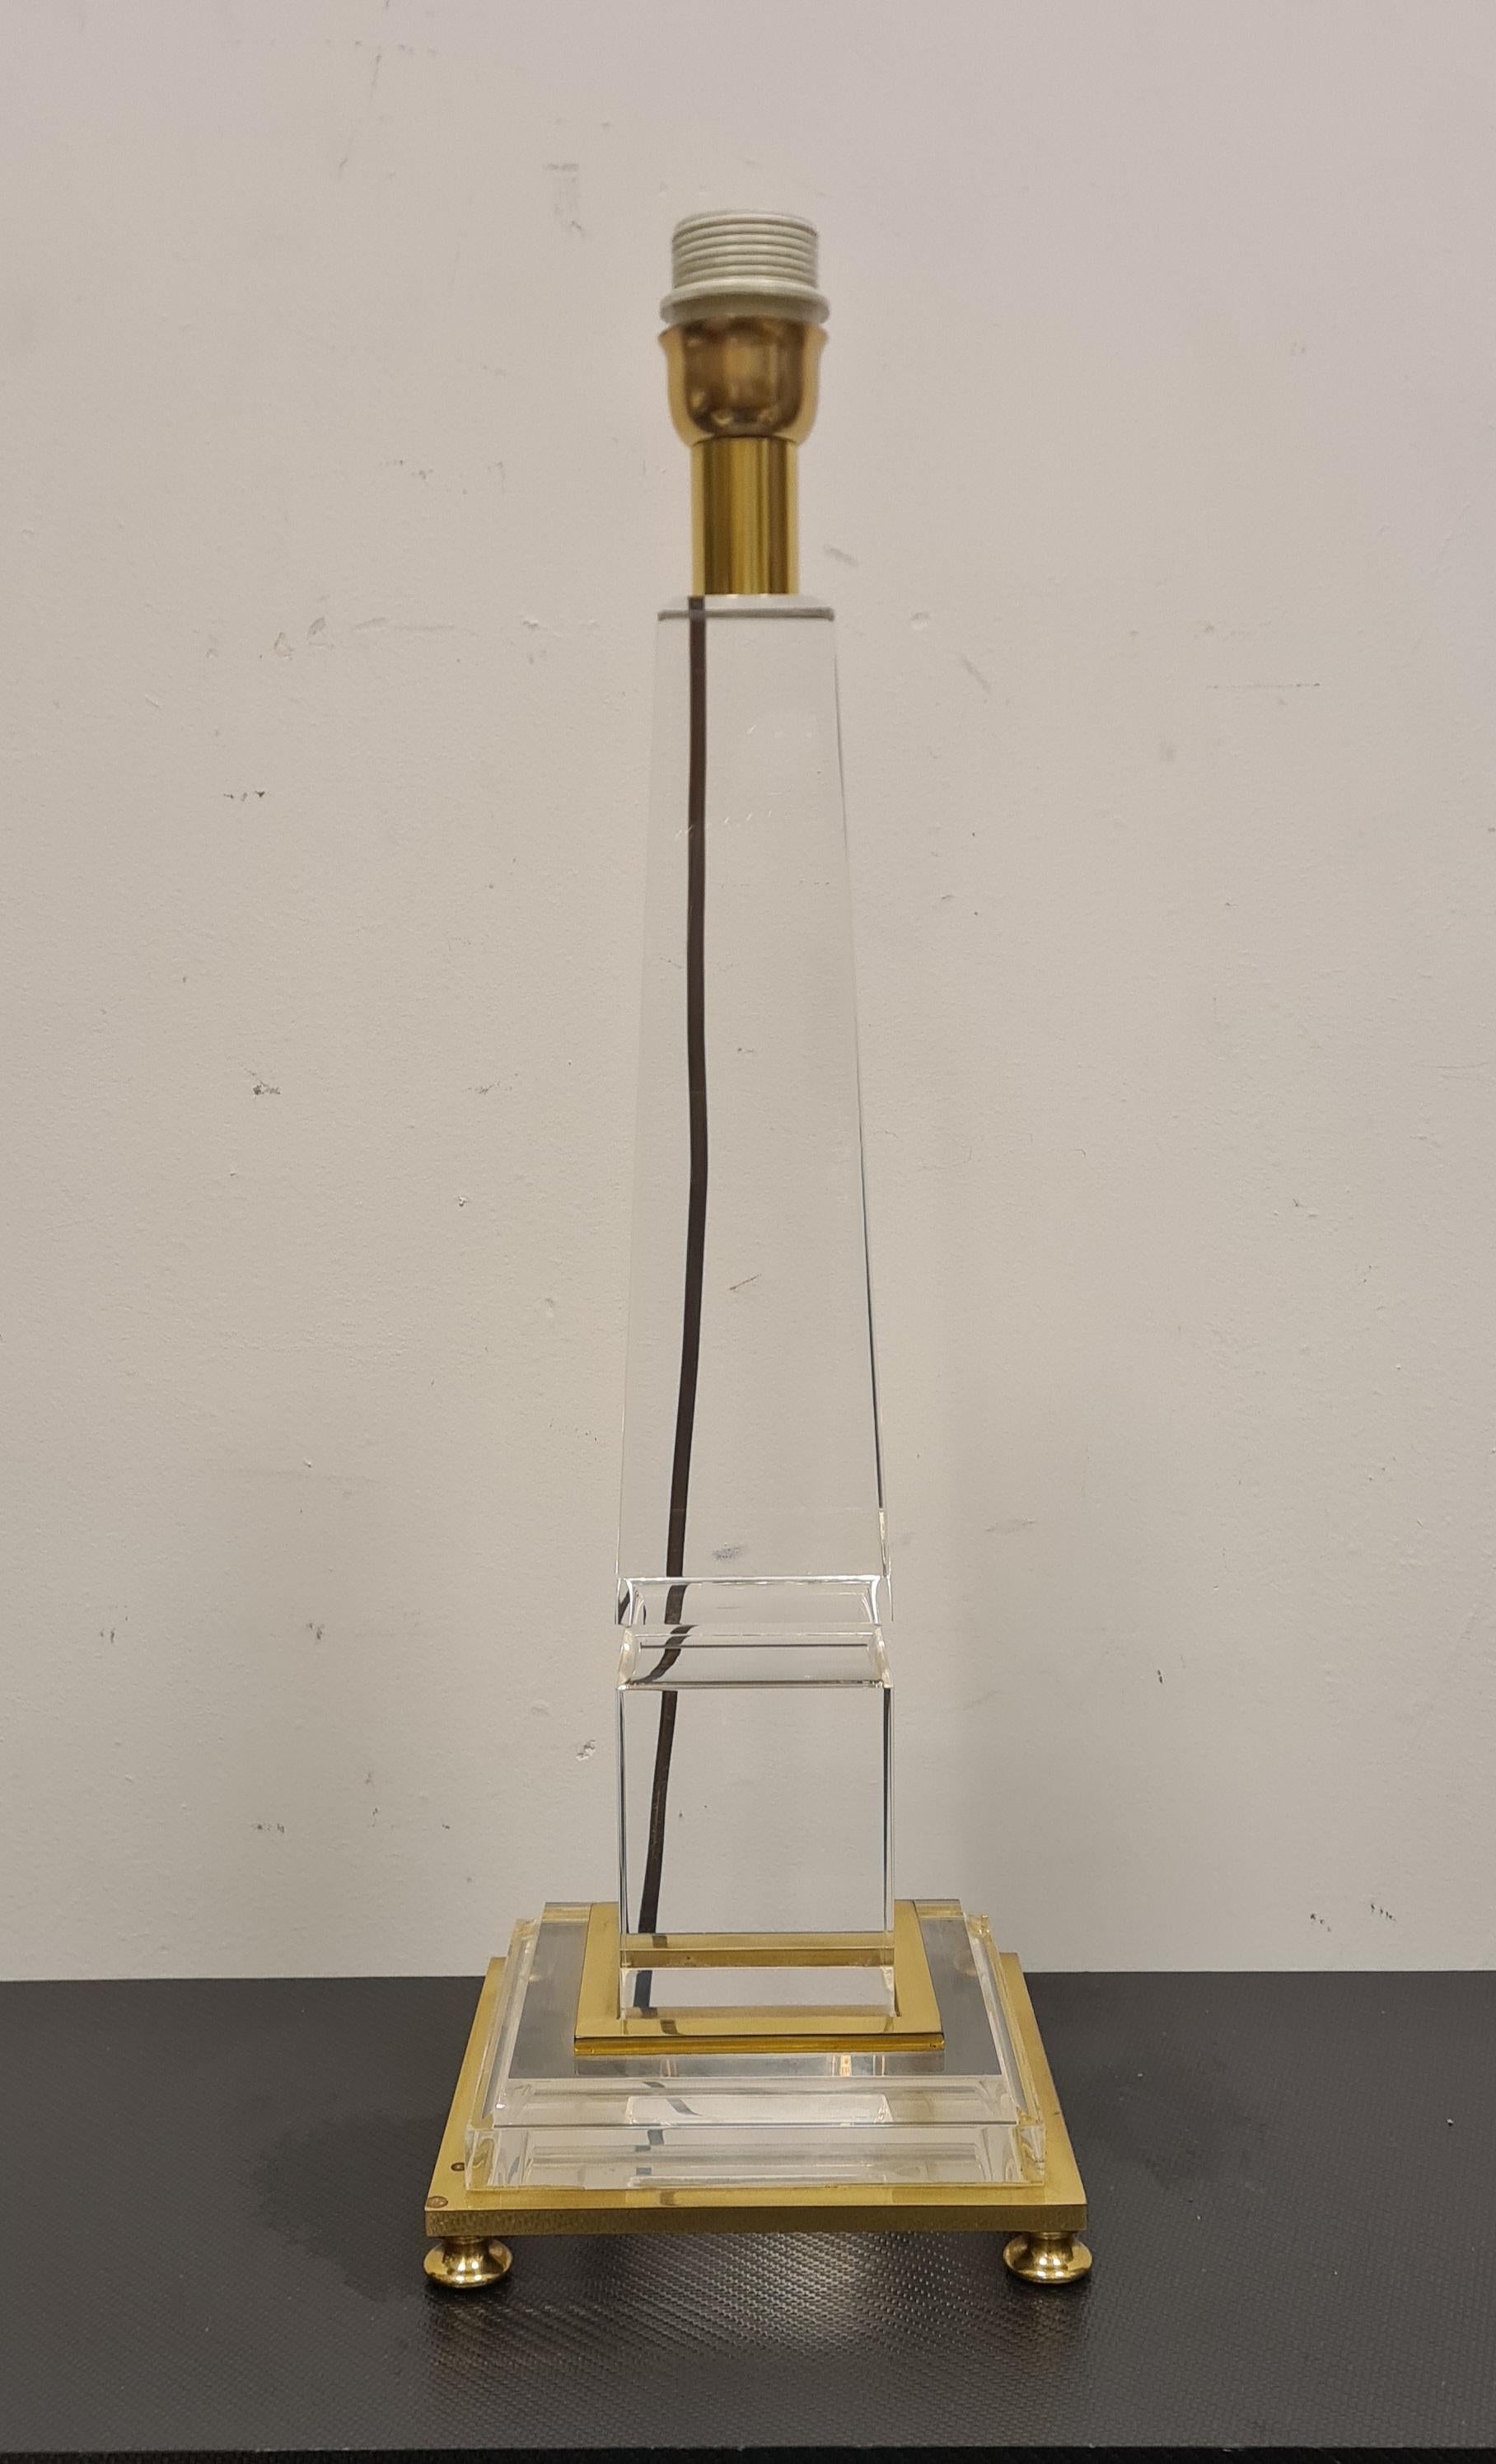 Tischleuchte mit Obeliskenfuß, entworfen von Sandro Petti.

Raffinierte Lampe in Form eines Obelisken aus Methacrylat und Messing mit einem Lampenschirm aus Stoff.

Diese elegante und diskrete Lampe im typischen Hollywood-Regency-Stil der 1970er